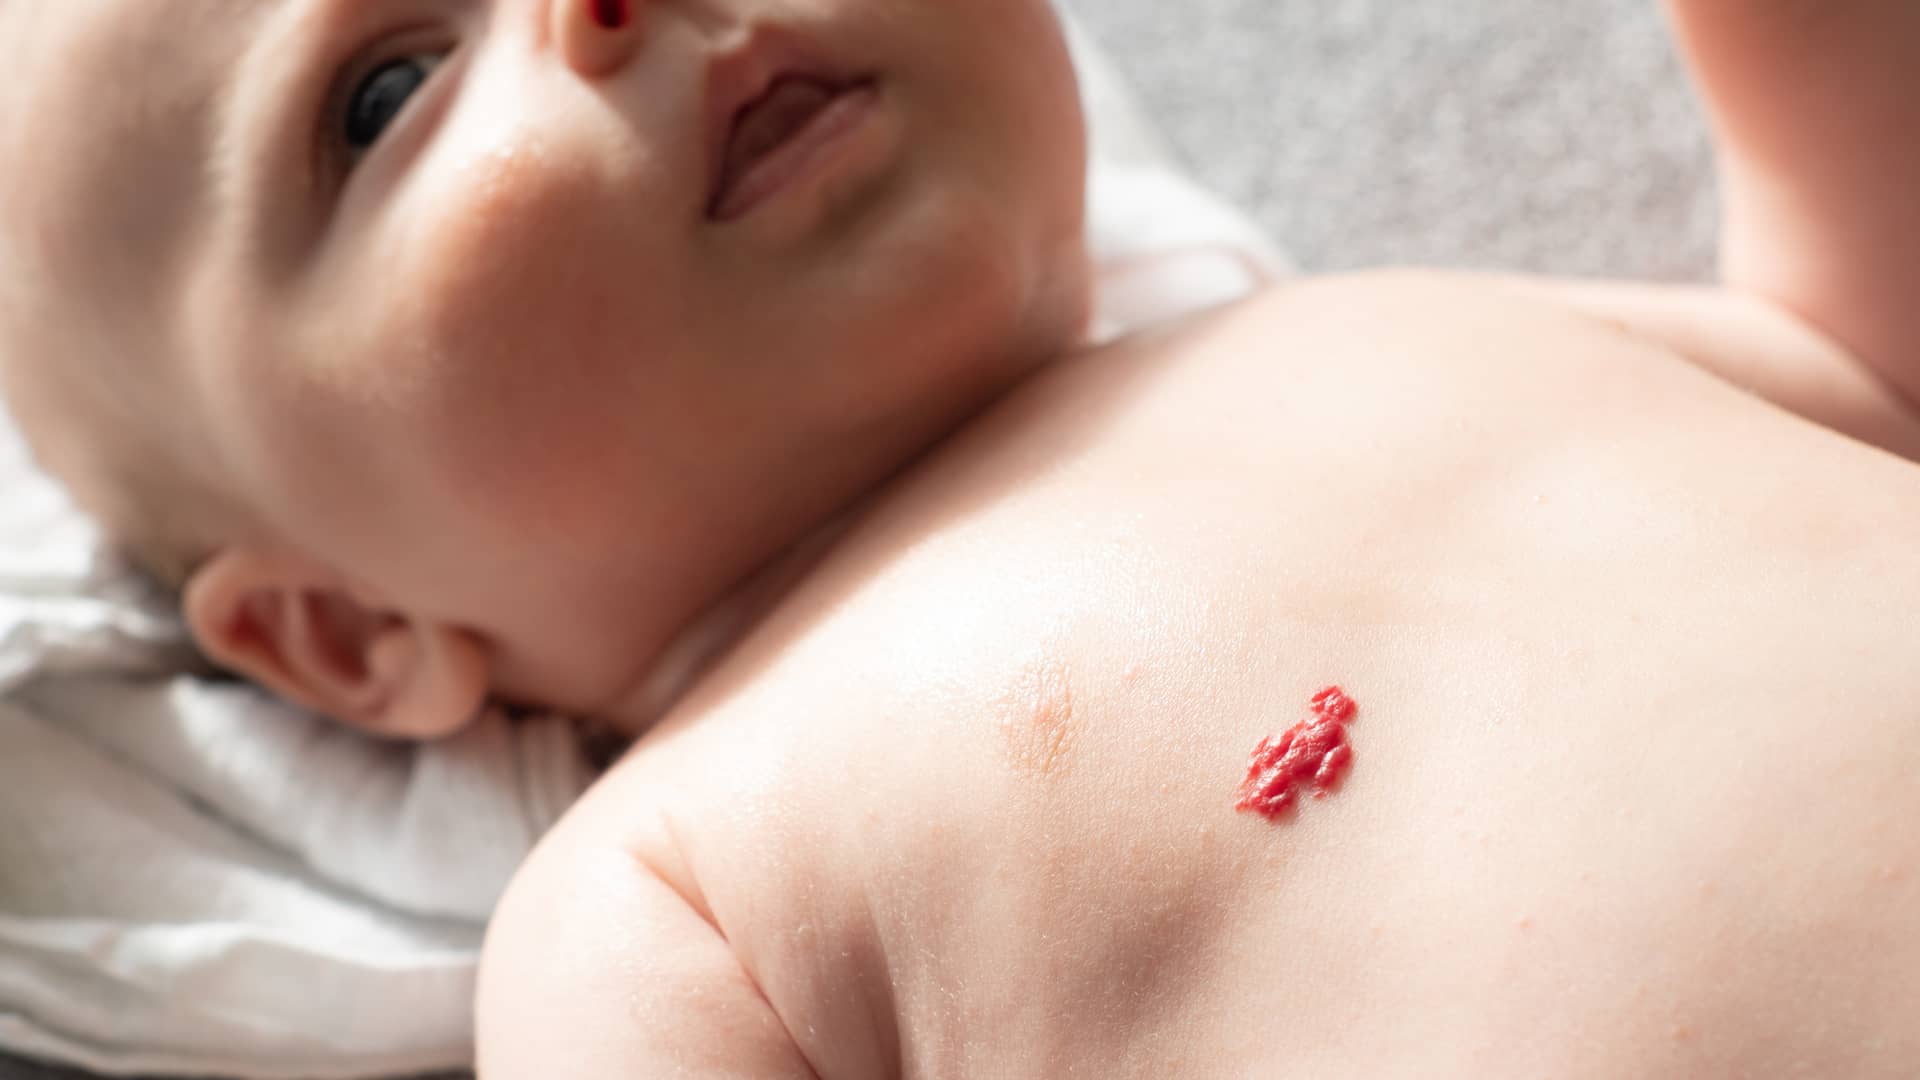 un bebe sin ropa sobre la cama con una mancha roja que es un hemangioma en el pecho